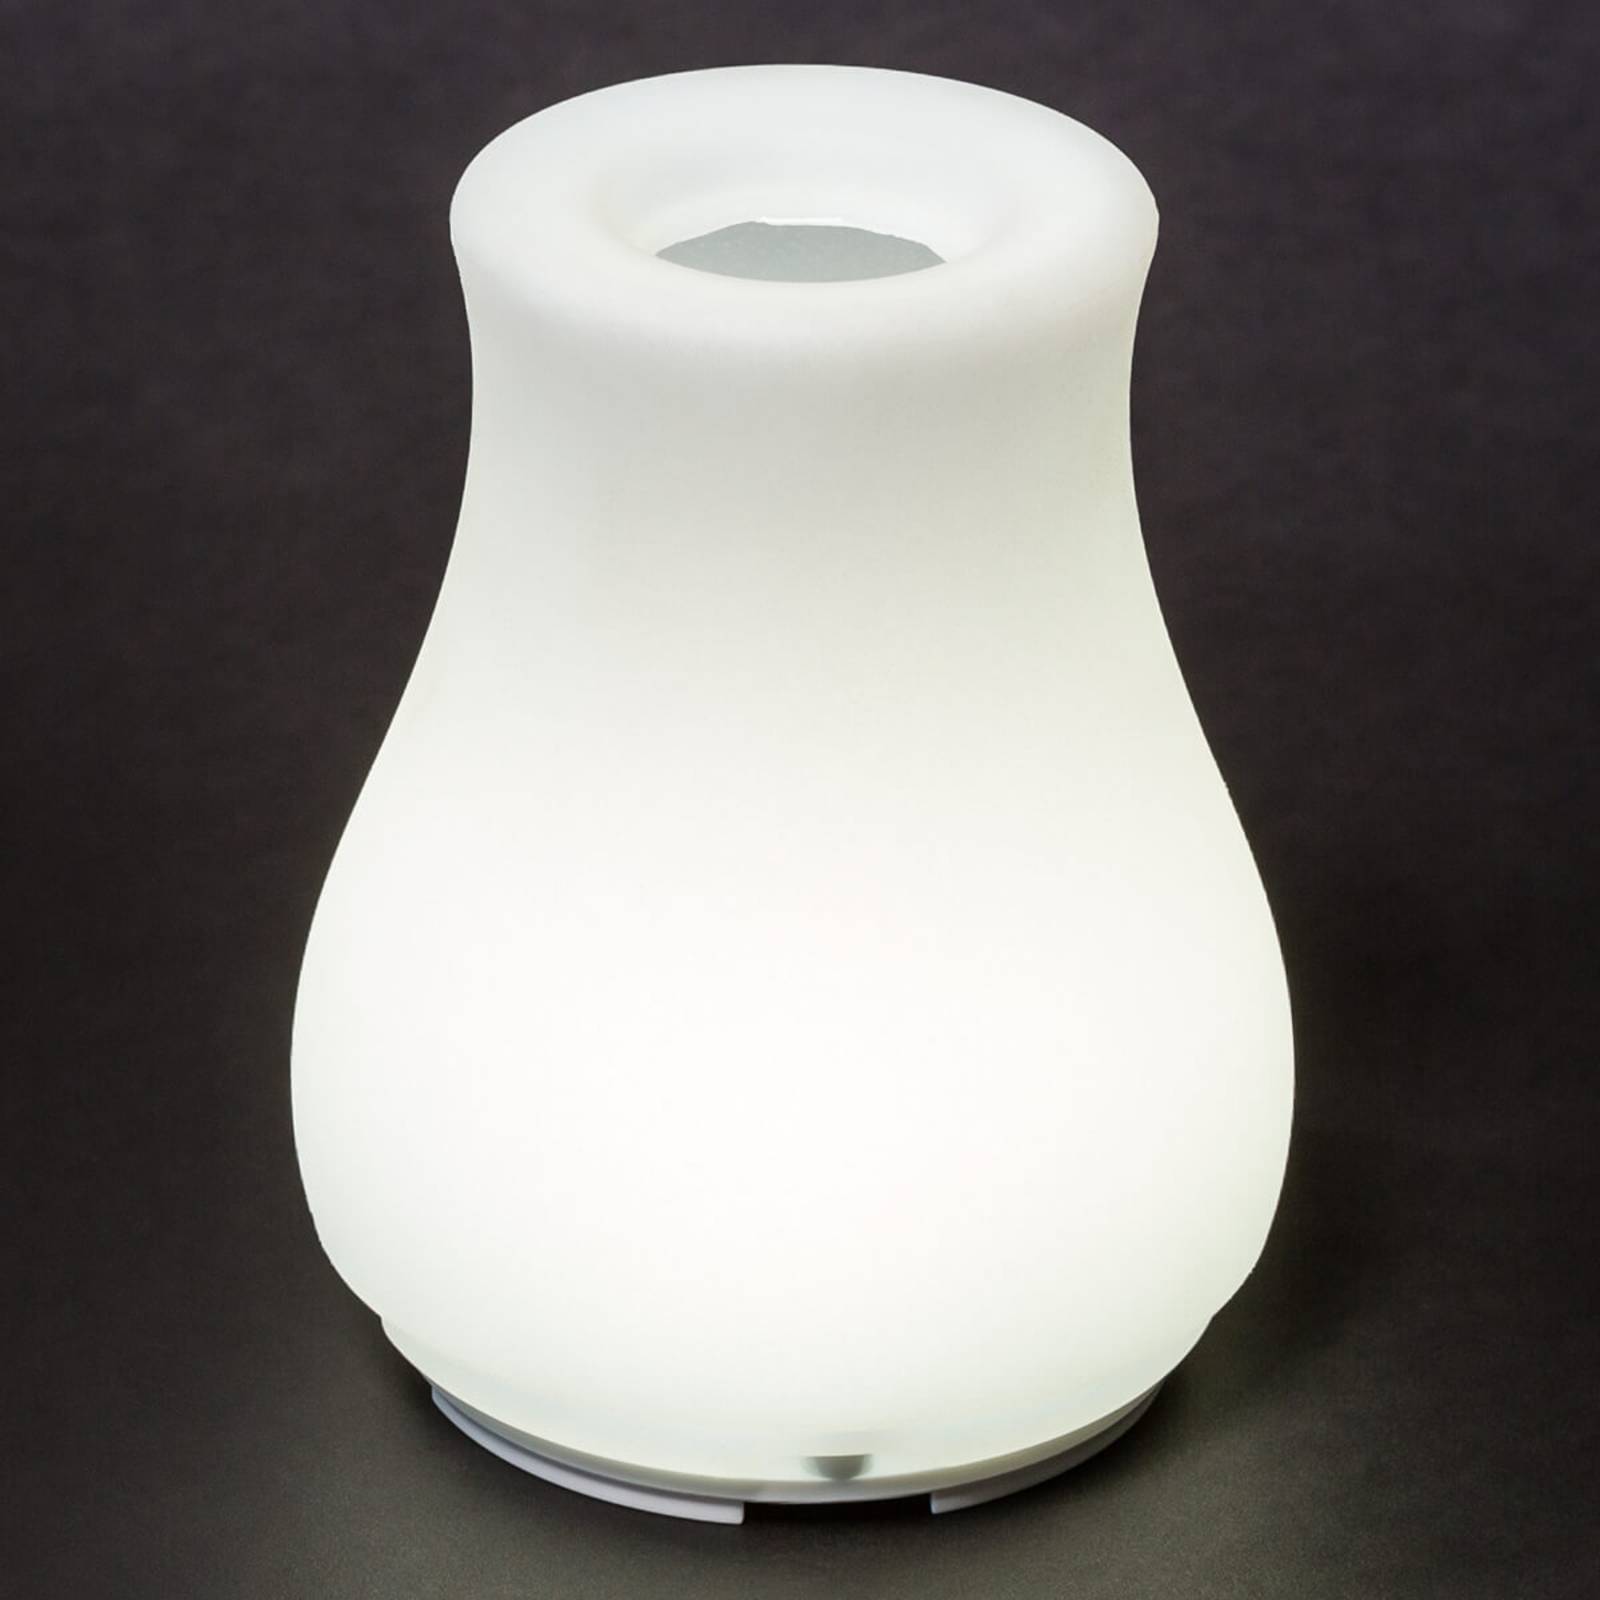 Olio – ovládateľný zdroj LED svetla a váza